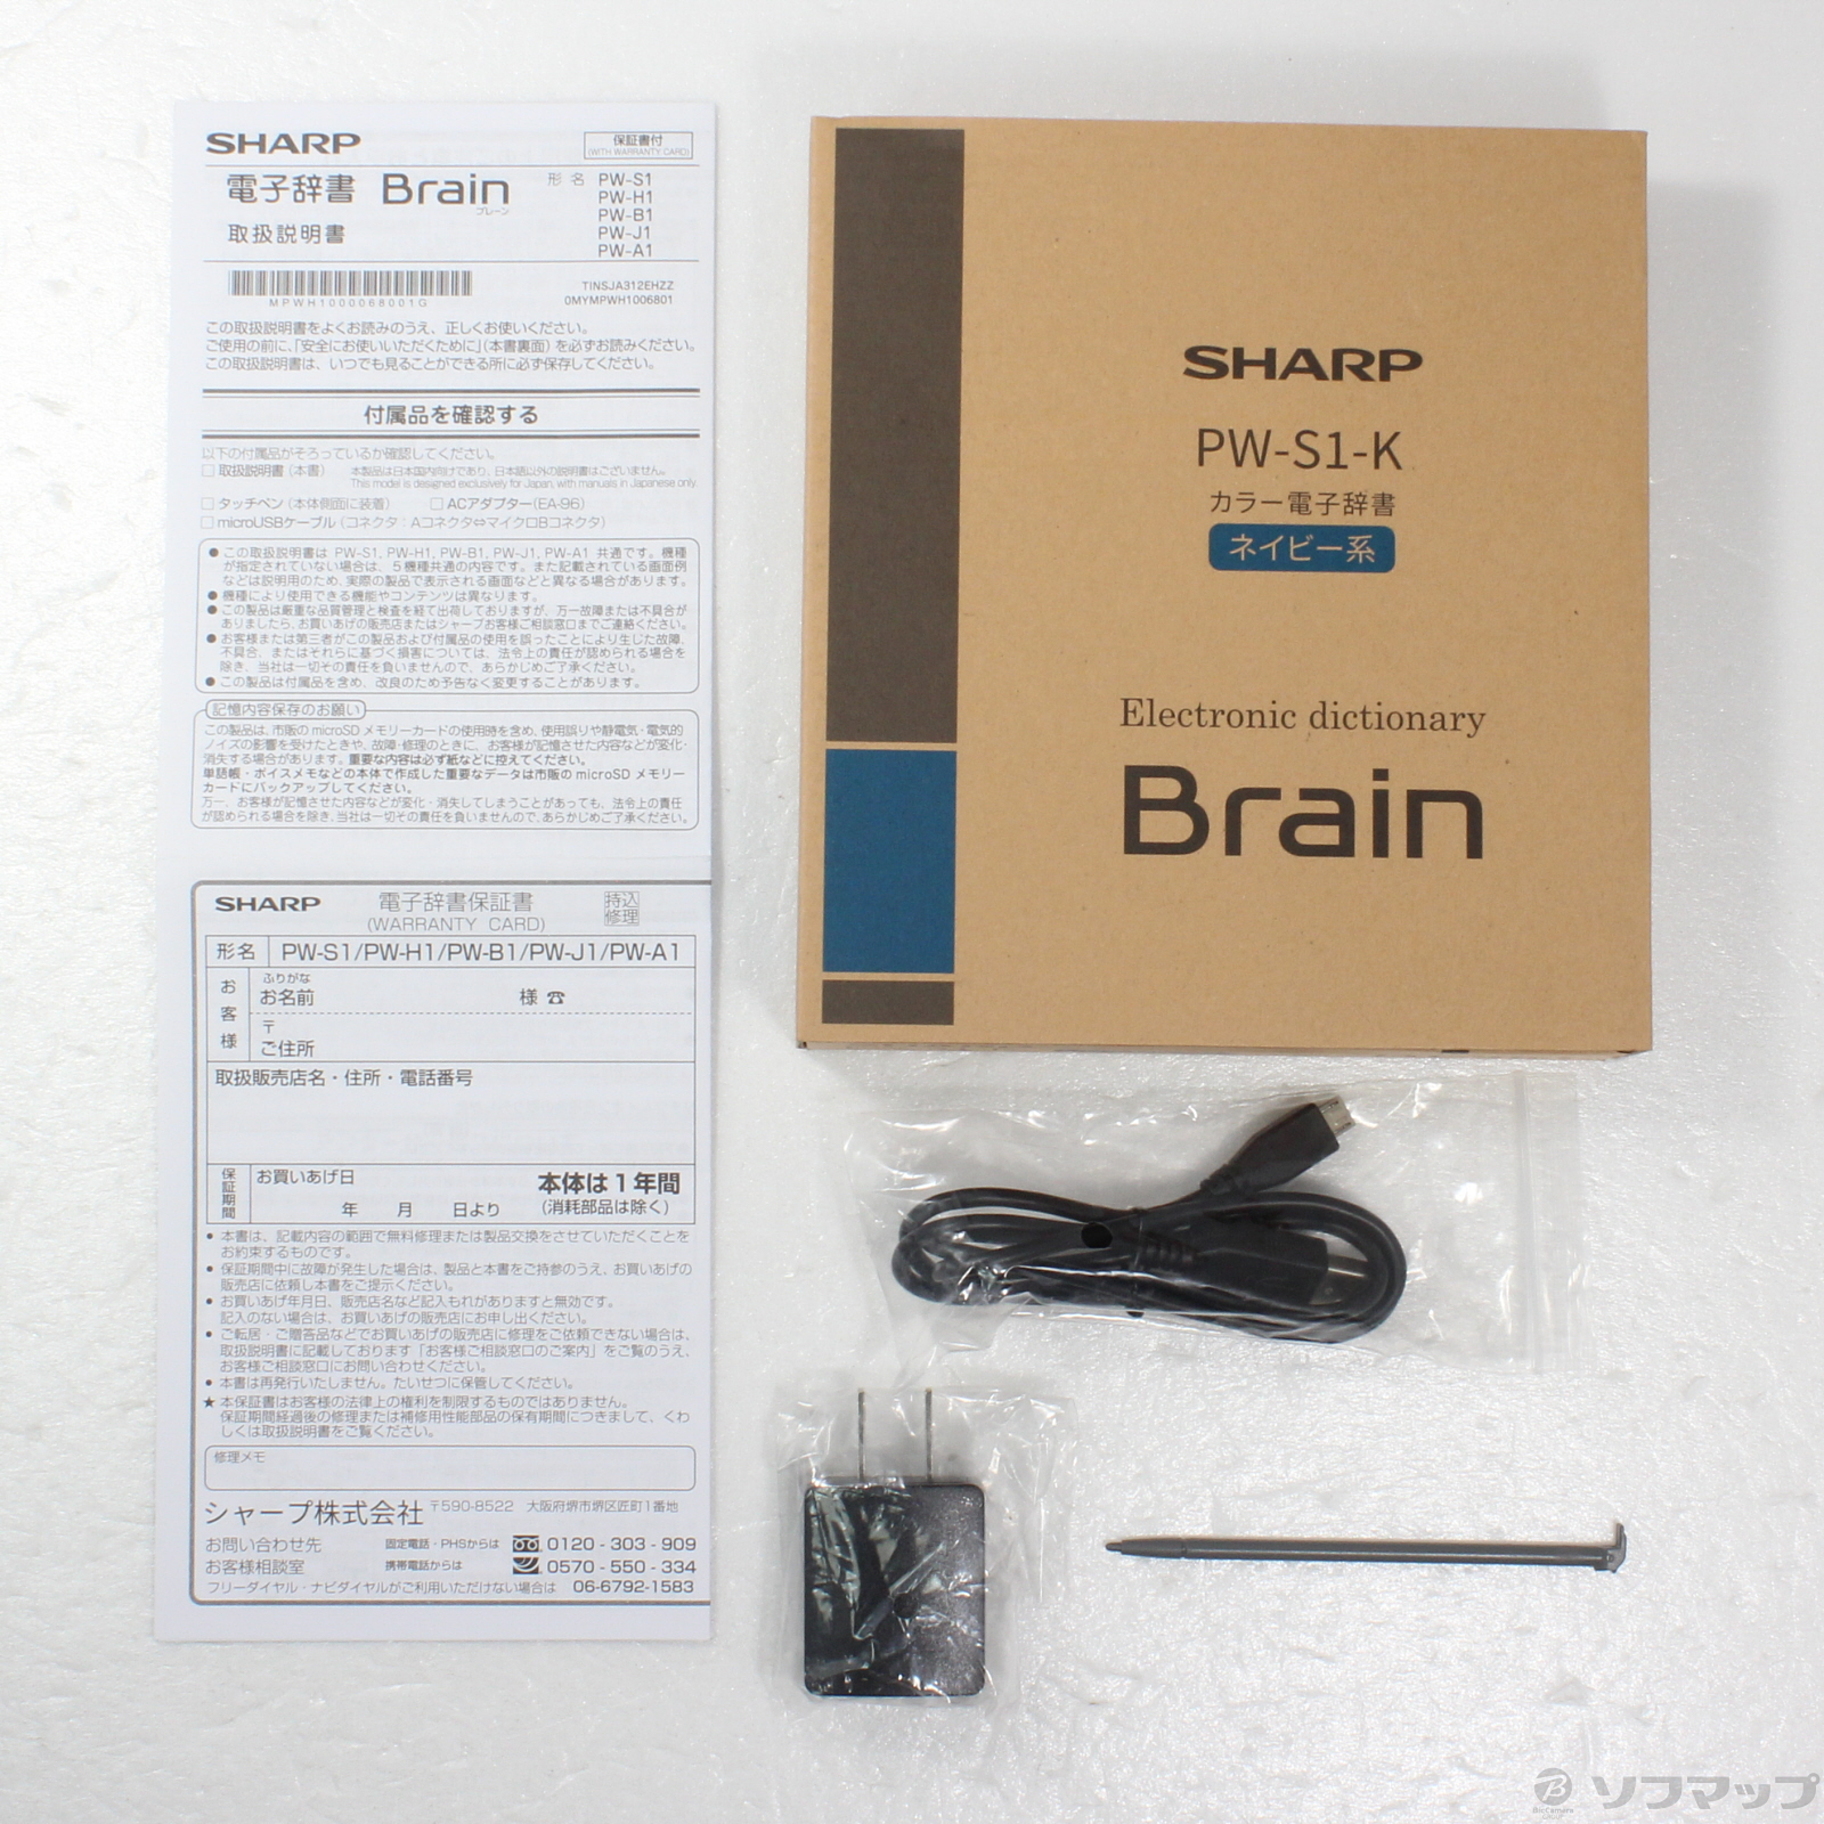 シャープ PW-S1-K カラー電子辞書 Brain 英語強化 高校生モデル ネイビー系 - 4